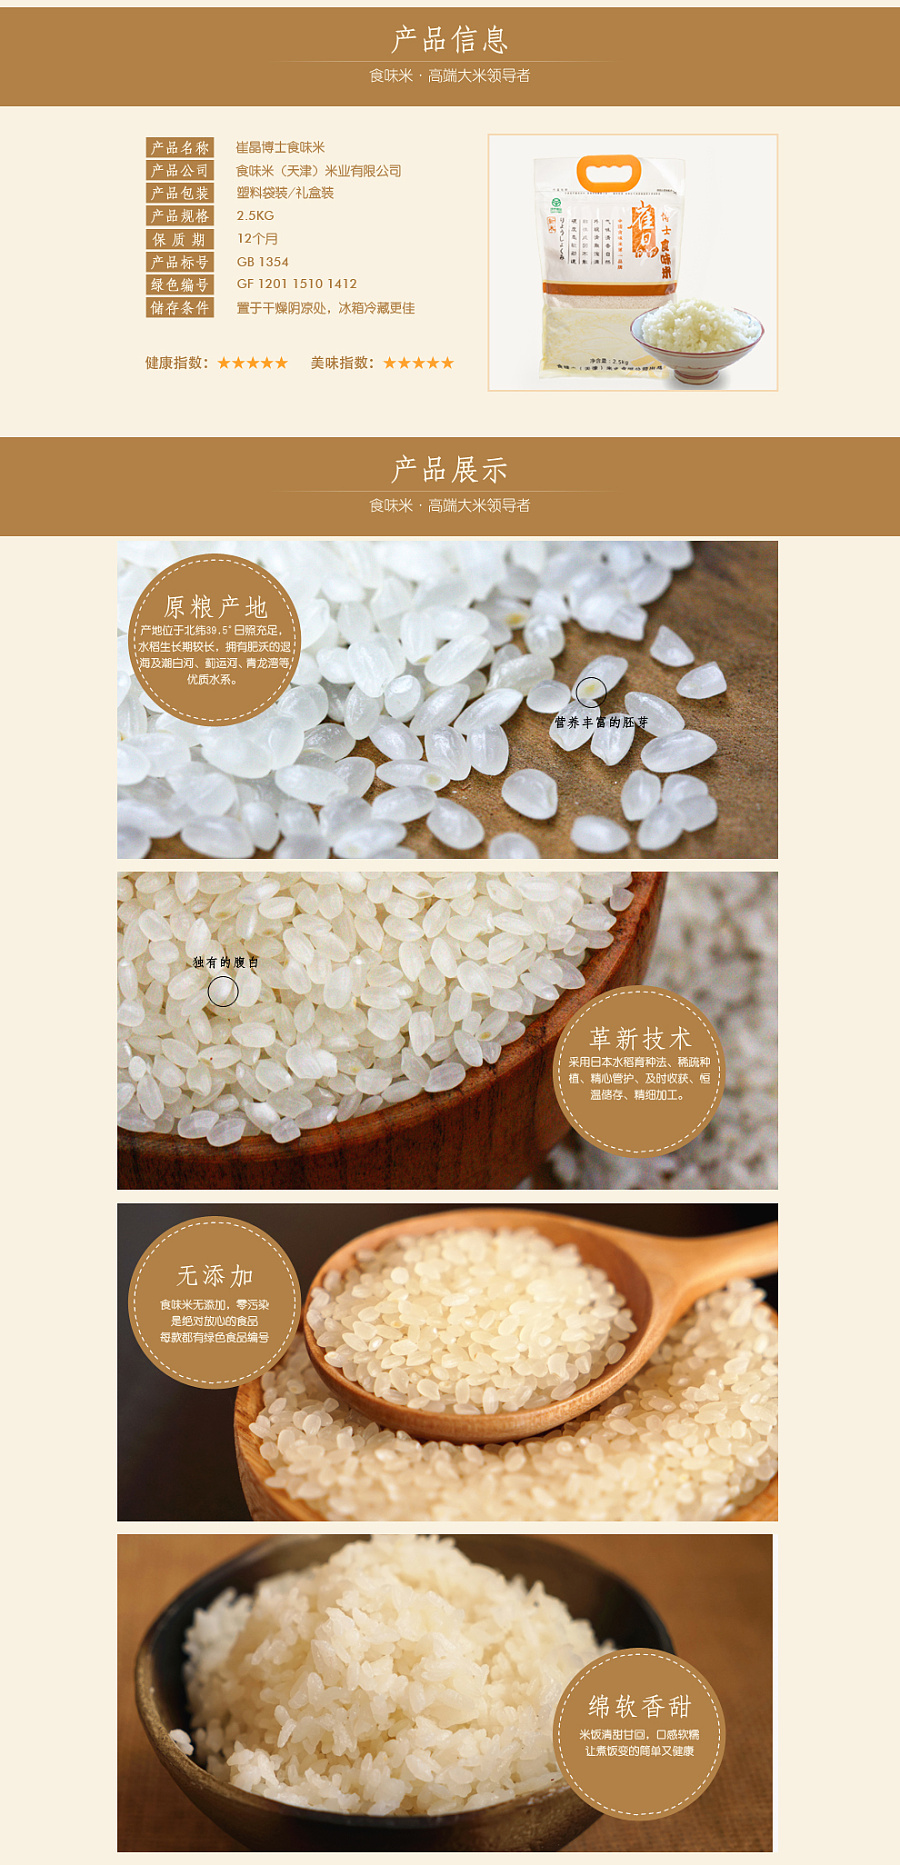 高端大米粮食淘宝详情描述页面设计|企业官网